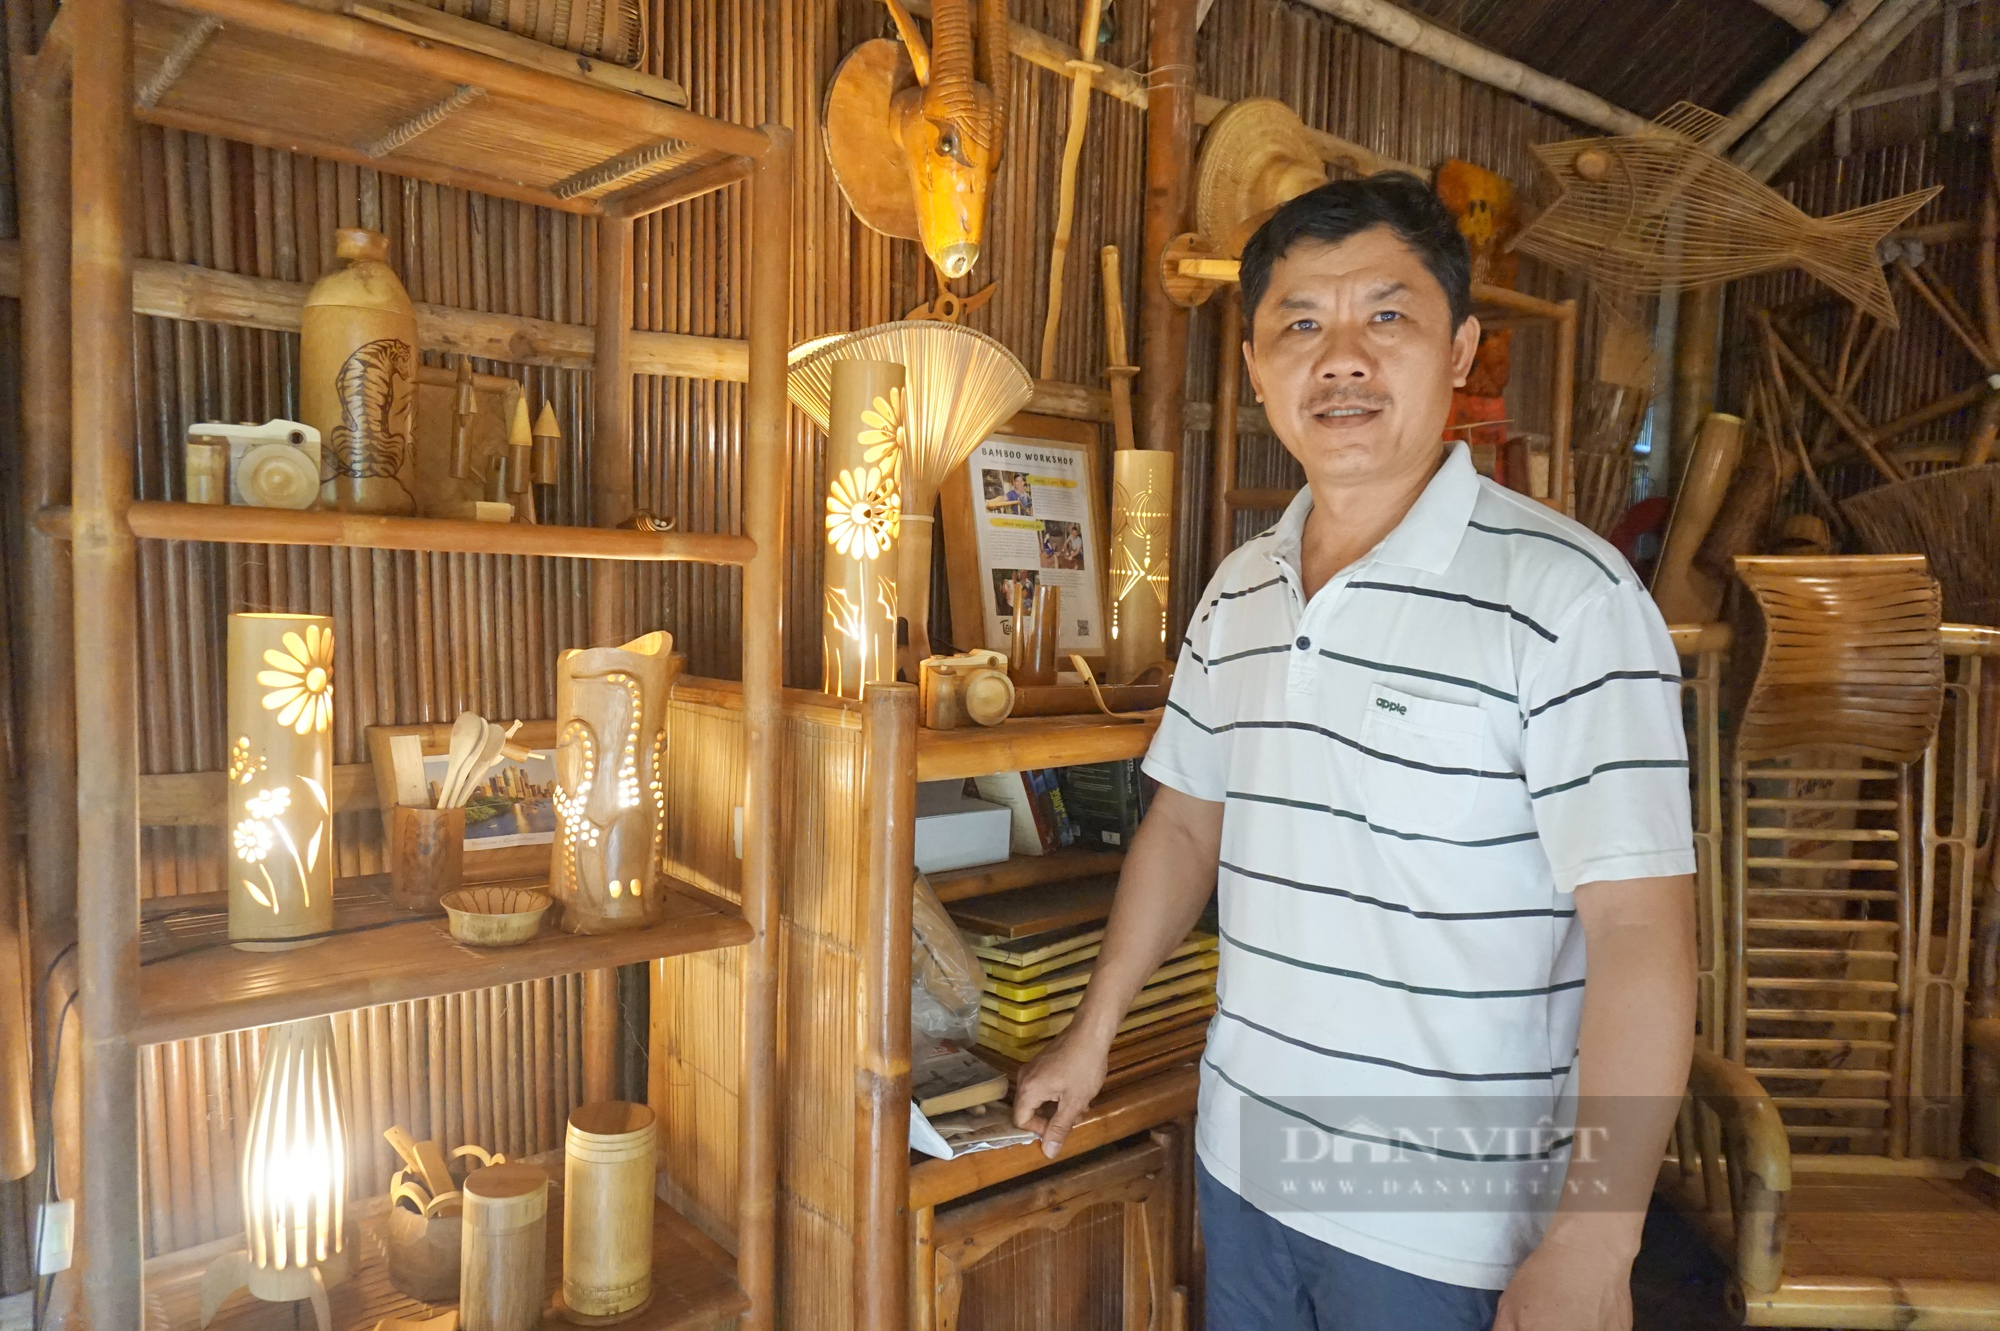 “Hô biến” tre làng thành tác phẩm nghệ thuật vạn người mê, một người dân ở Quảng Nam thu lãi hàng trăm triệu đồng - Ảnh 1.